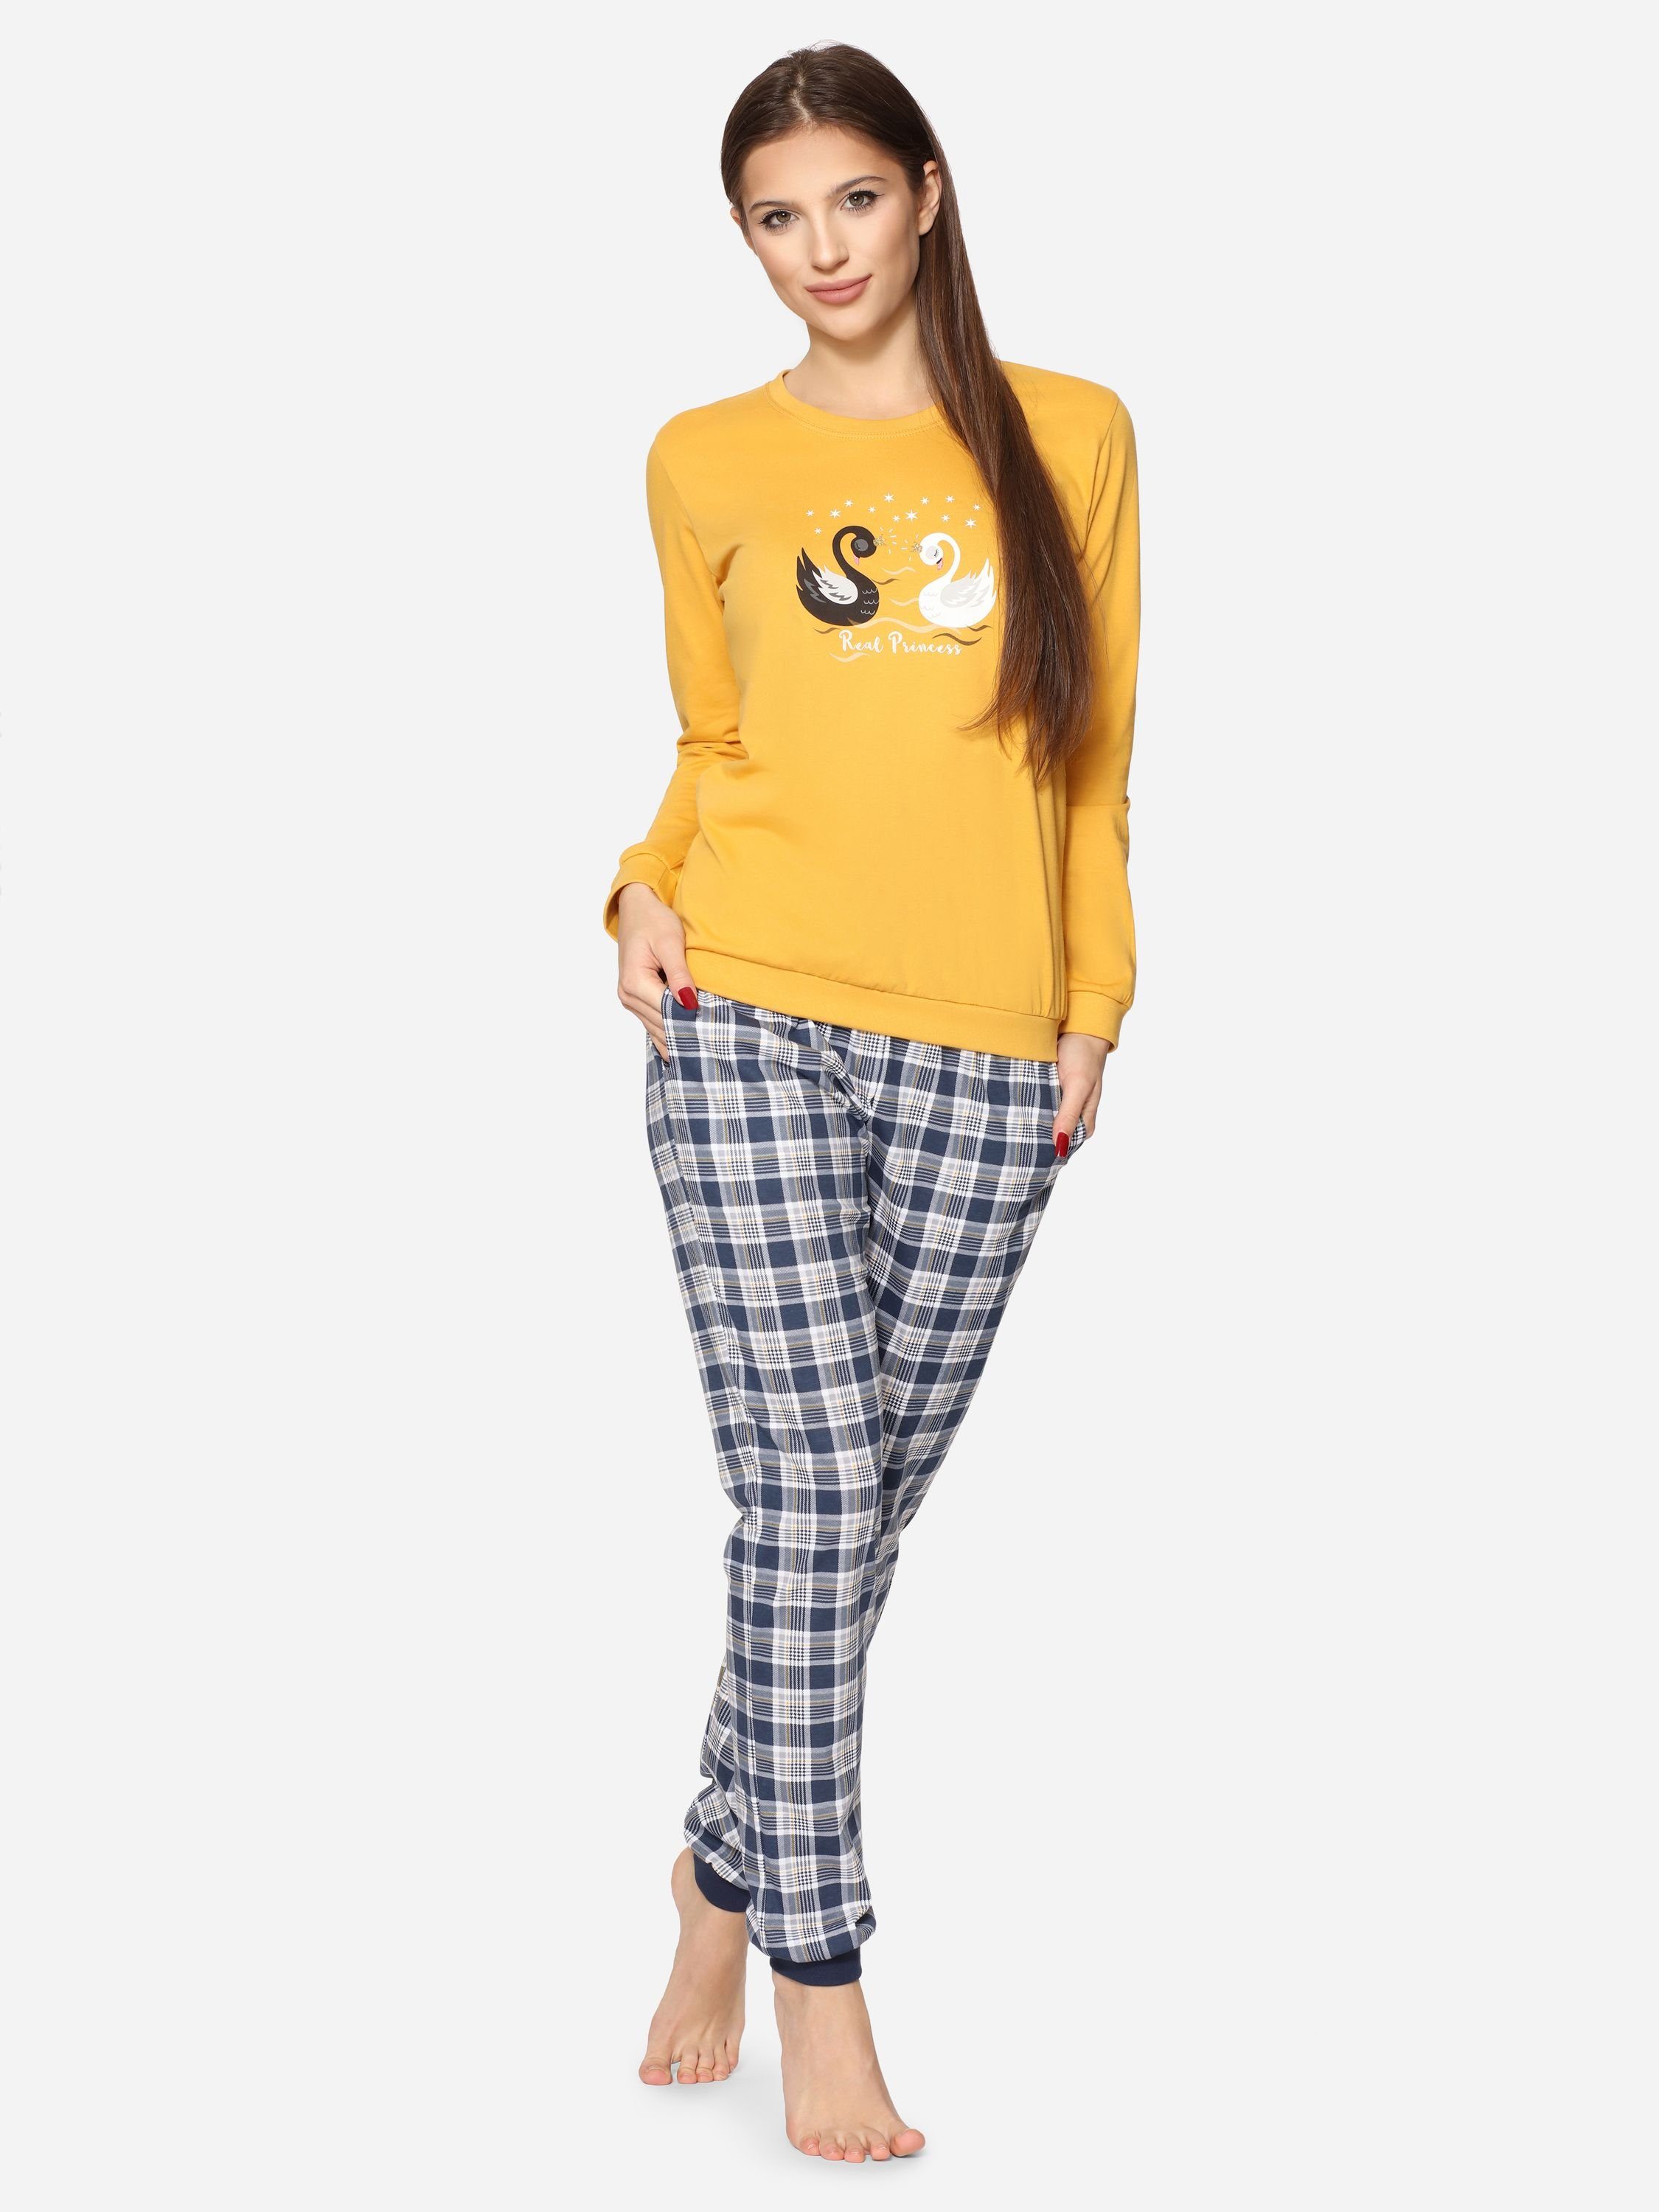 Honig Damen Langarm mit Baumwolle Cornette Pyjama Zweiteiler Rundhals 634 (Swan) Schlafanzug Schlafanzug